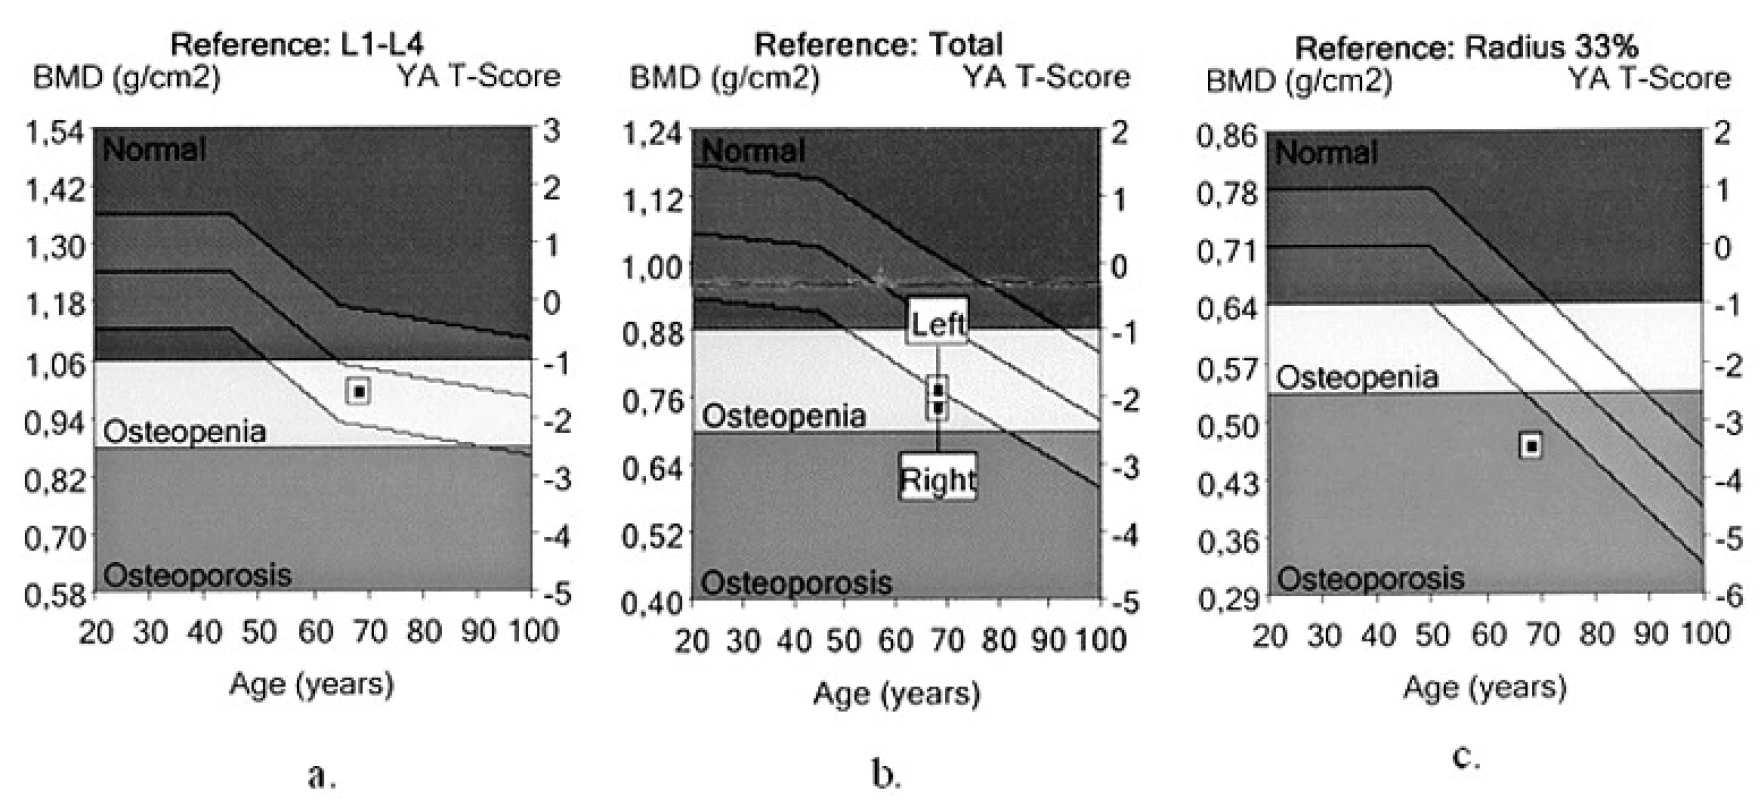 Denzita kostního minerálu (BMD) stanovená dvouenergiovou rentgenovou absorpciometrií (kostní denzitometrie)
a. BMD a T-skóre v oblasti bederní páteře (L1-L4)
b. BMD a T-skóre v oblasti proximálního femuru (Total)
c. BMD a T-skóre v oblasti distální třetiny předloktí (Radius 33%)